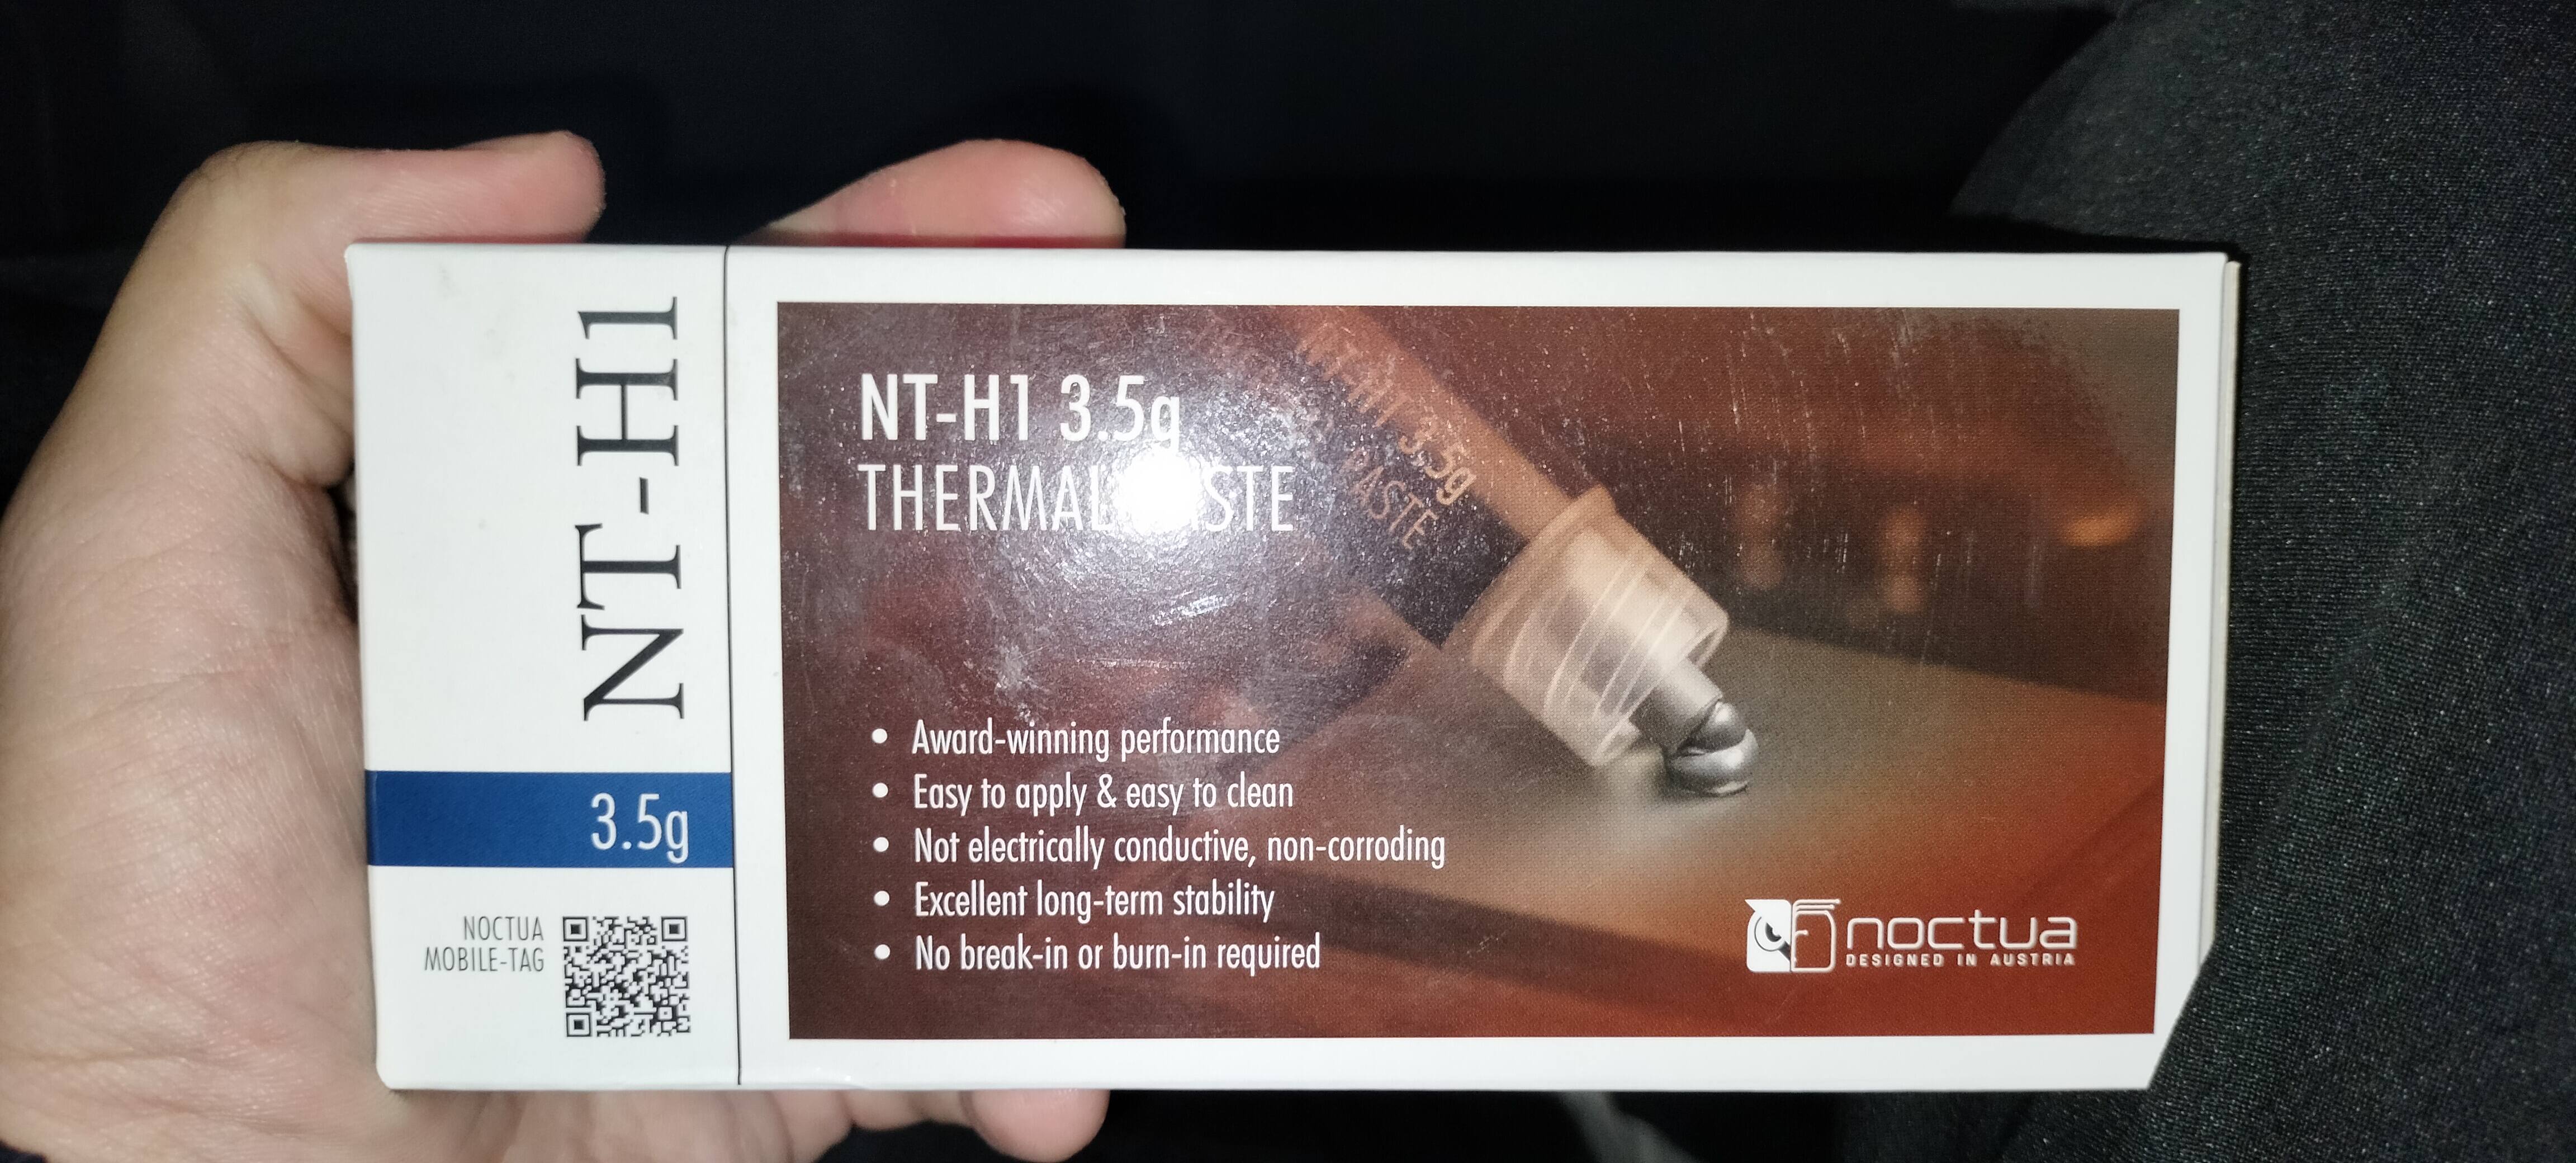 Noctua NT-H1 3.5 g